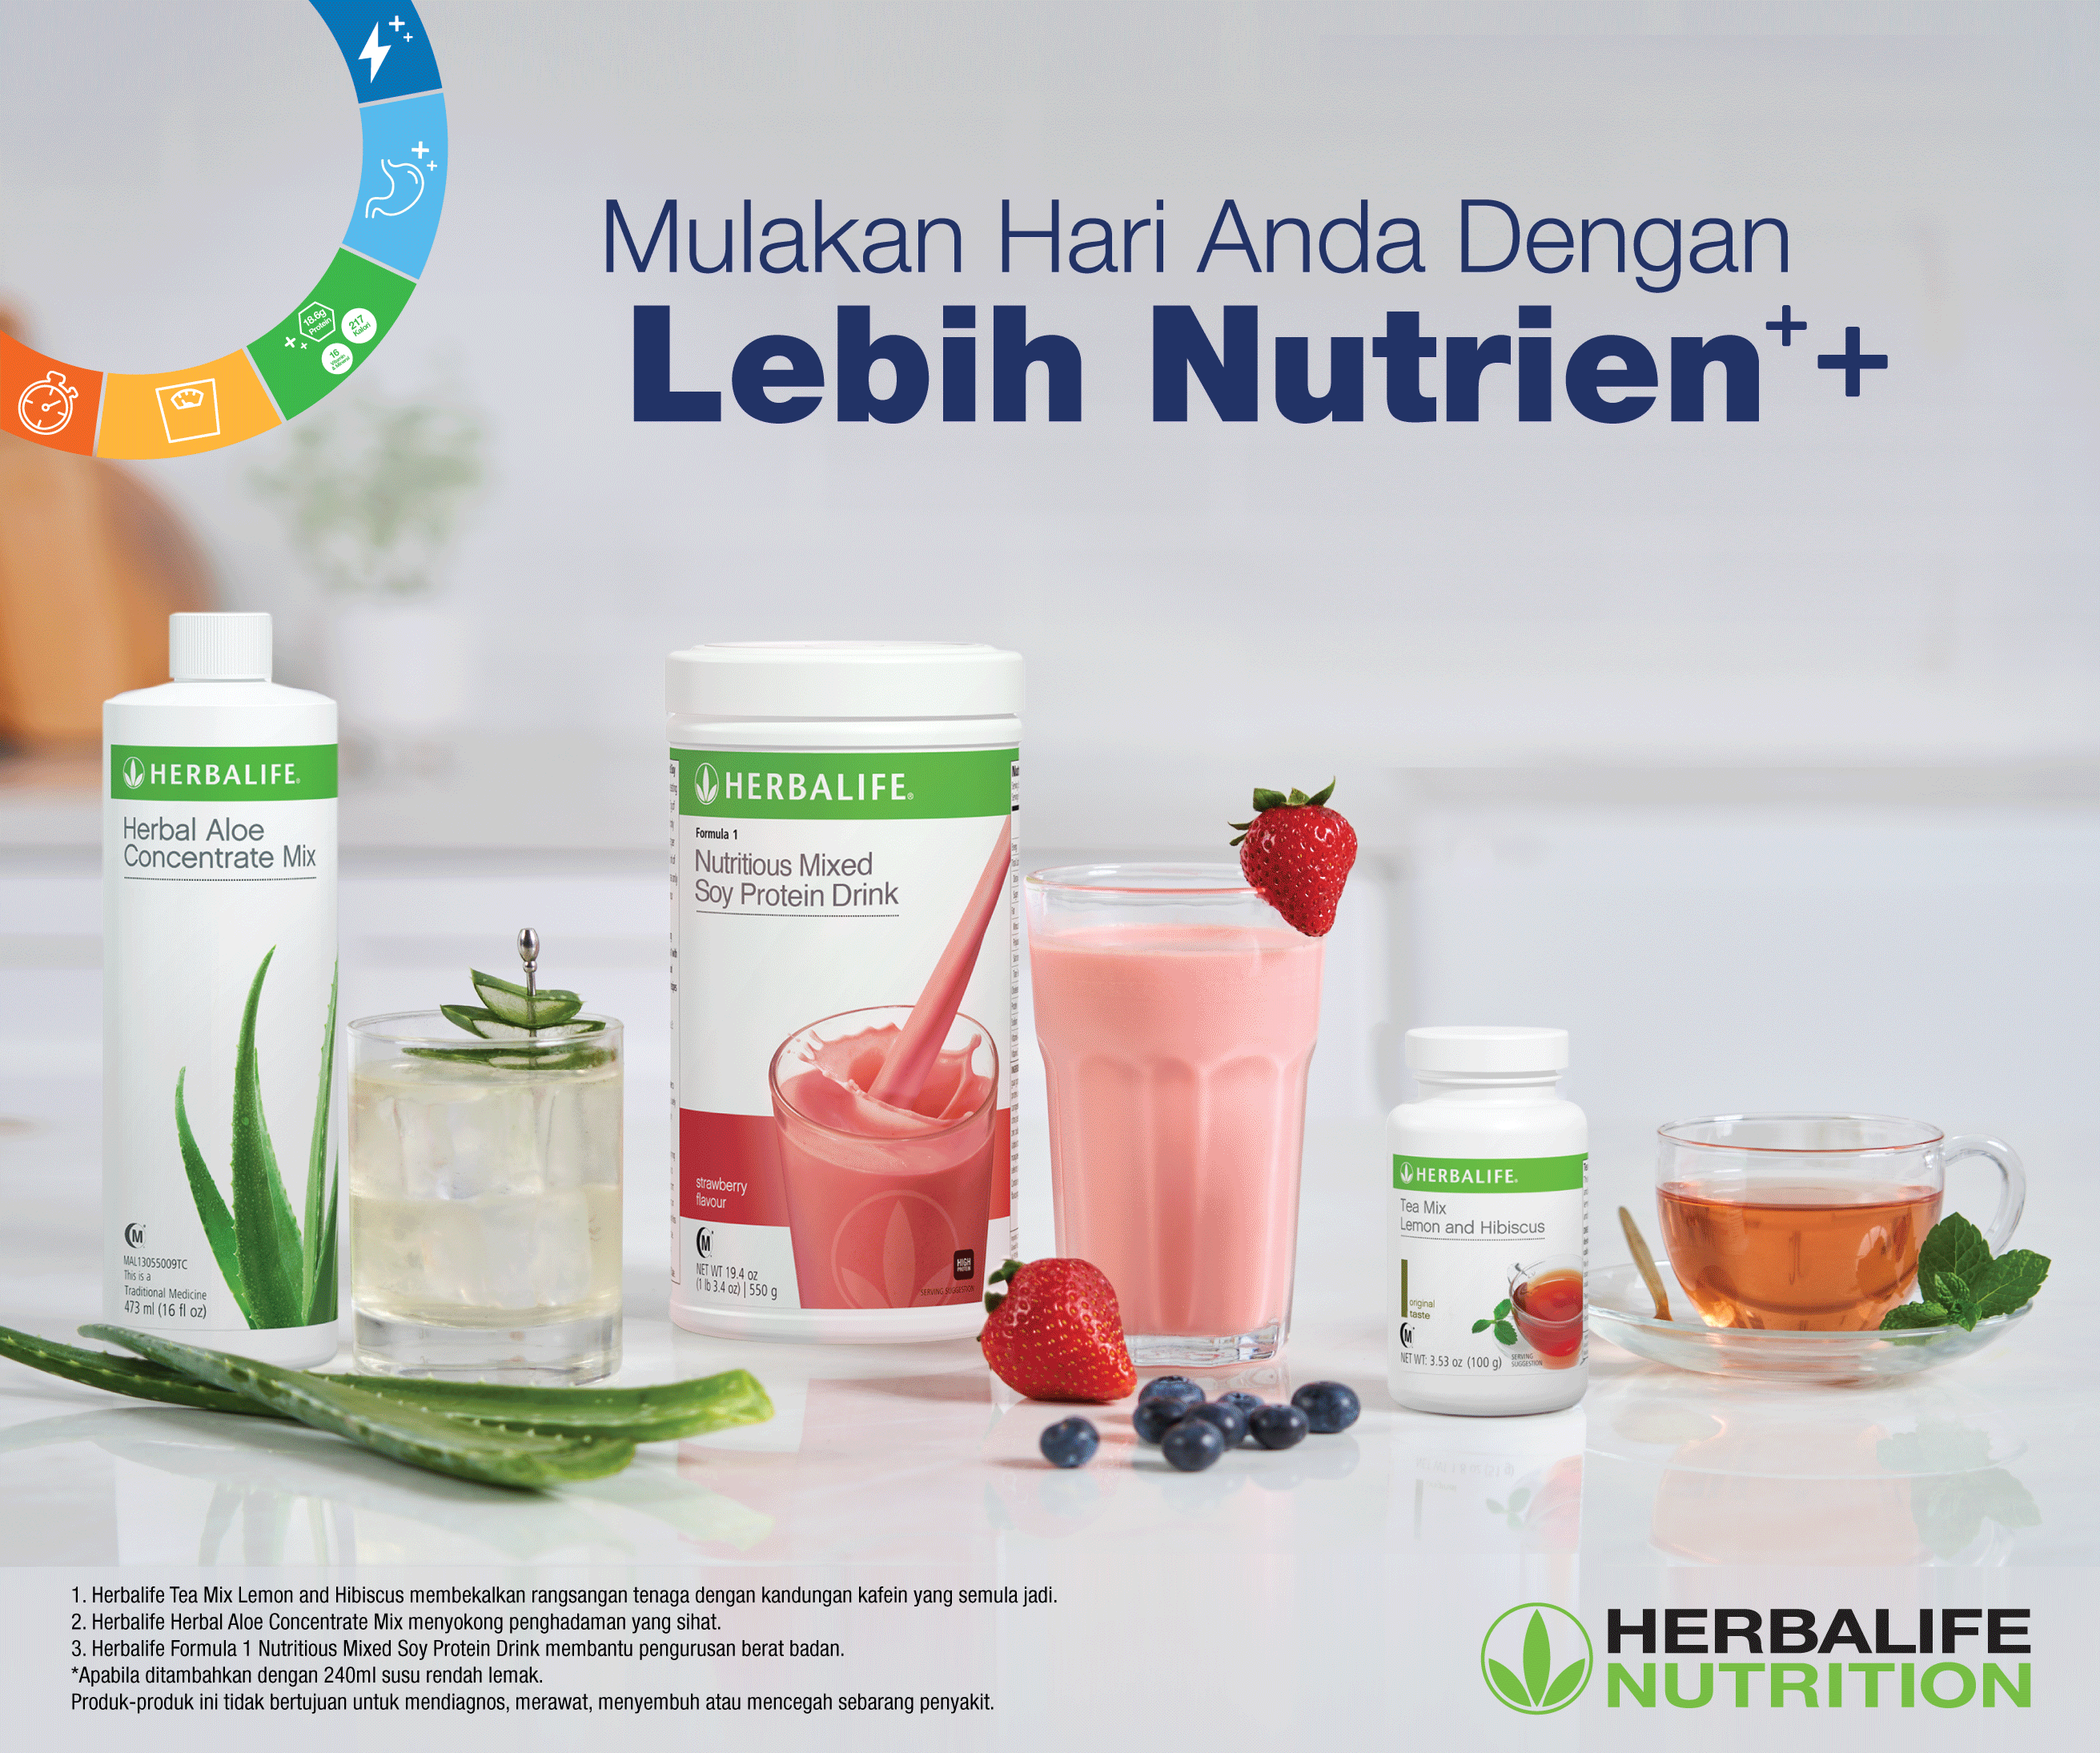 Mulakan hari anda diperkaya dengan nutrien melalui Herbalife Nutrition Healthy Breakfast.